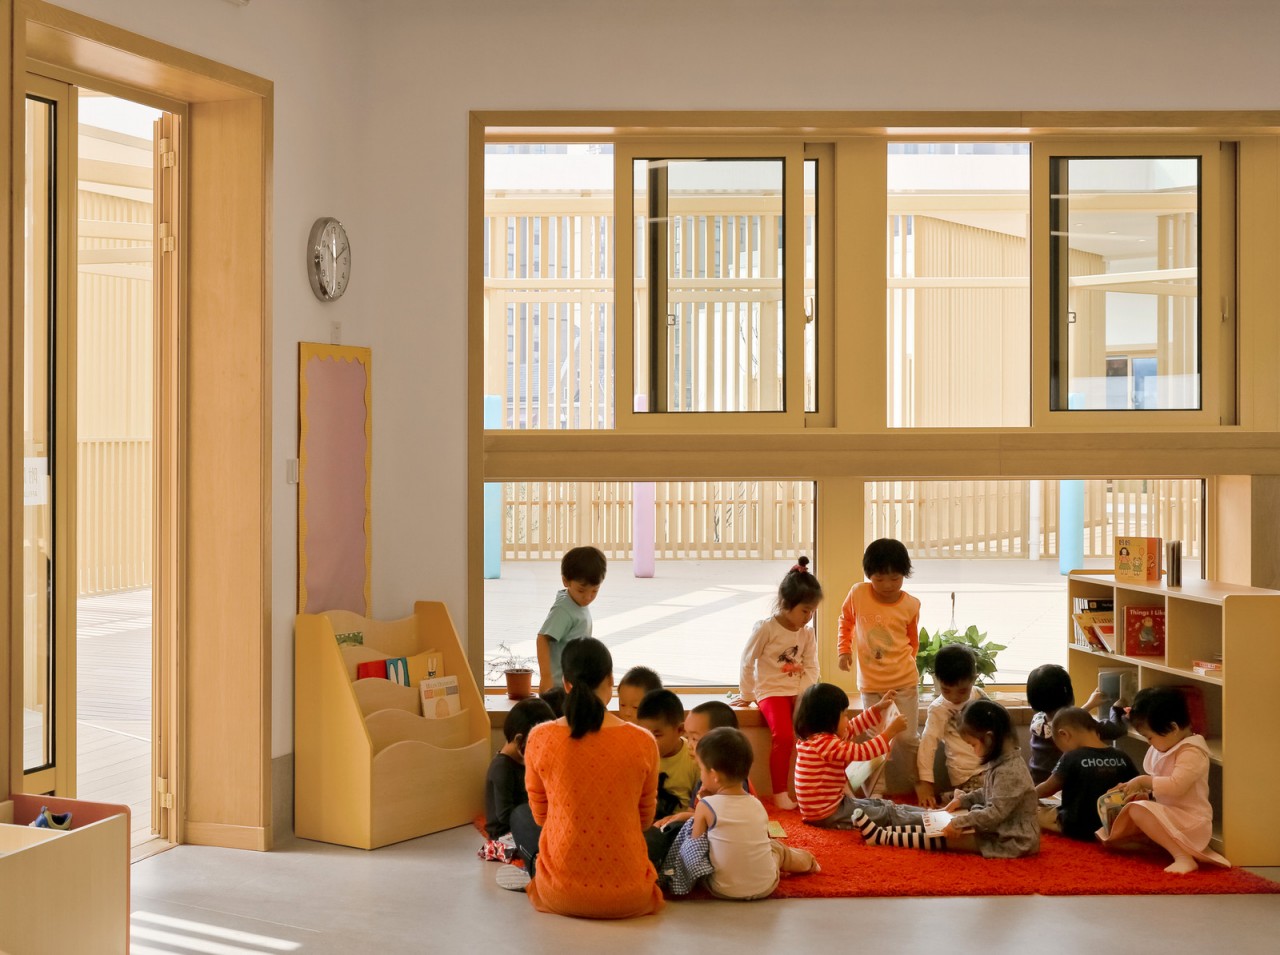 Билингвальный детский сад при университете в Китае